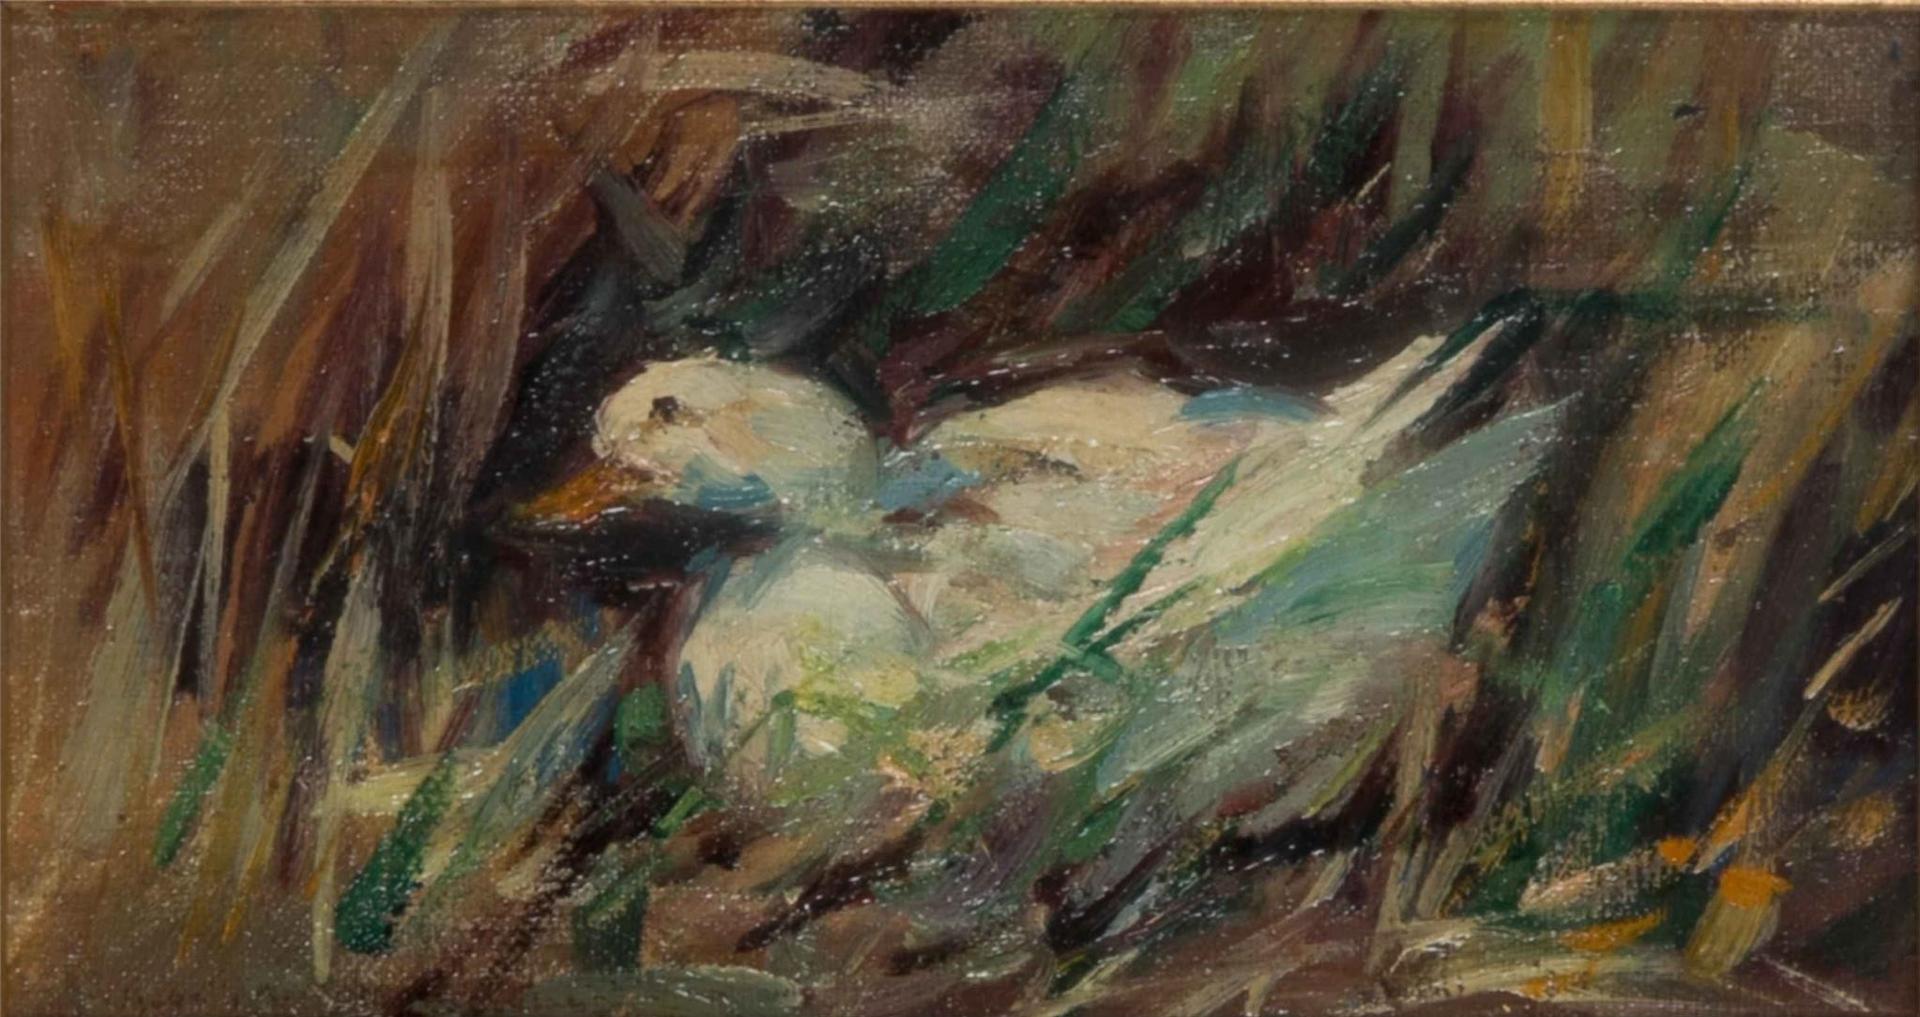 ATTRTIB. Elizabeth A.M. Knowles (1866-1928) - Duck in a Marsh